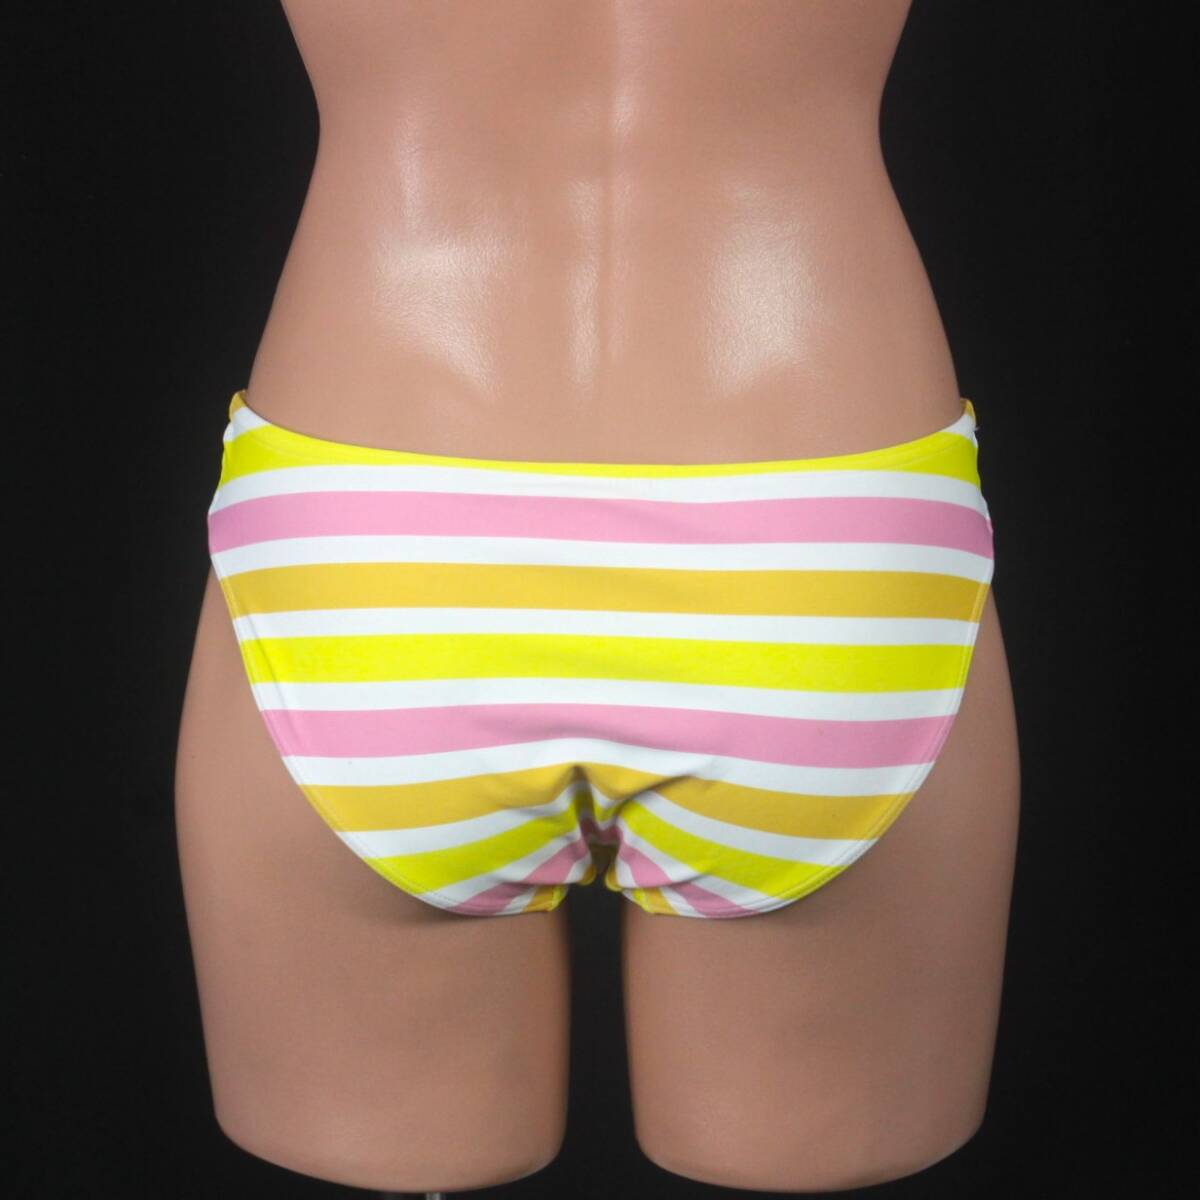 U8534★かわいい ボーダー 水着 ボトム ビキニ パンツ レディース 9M 黄色 ピンク スイムショーツ 水泳 スイミング プール ビーチの画像3